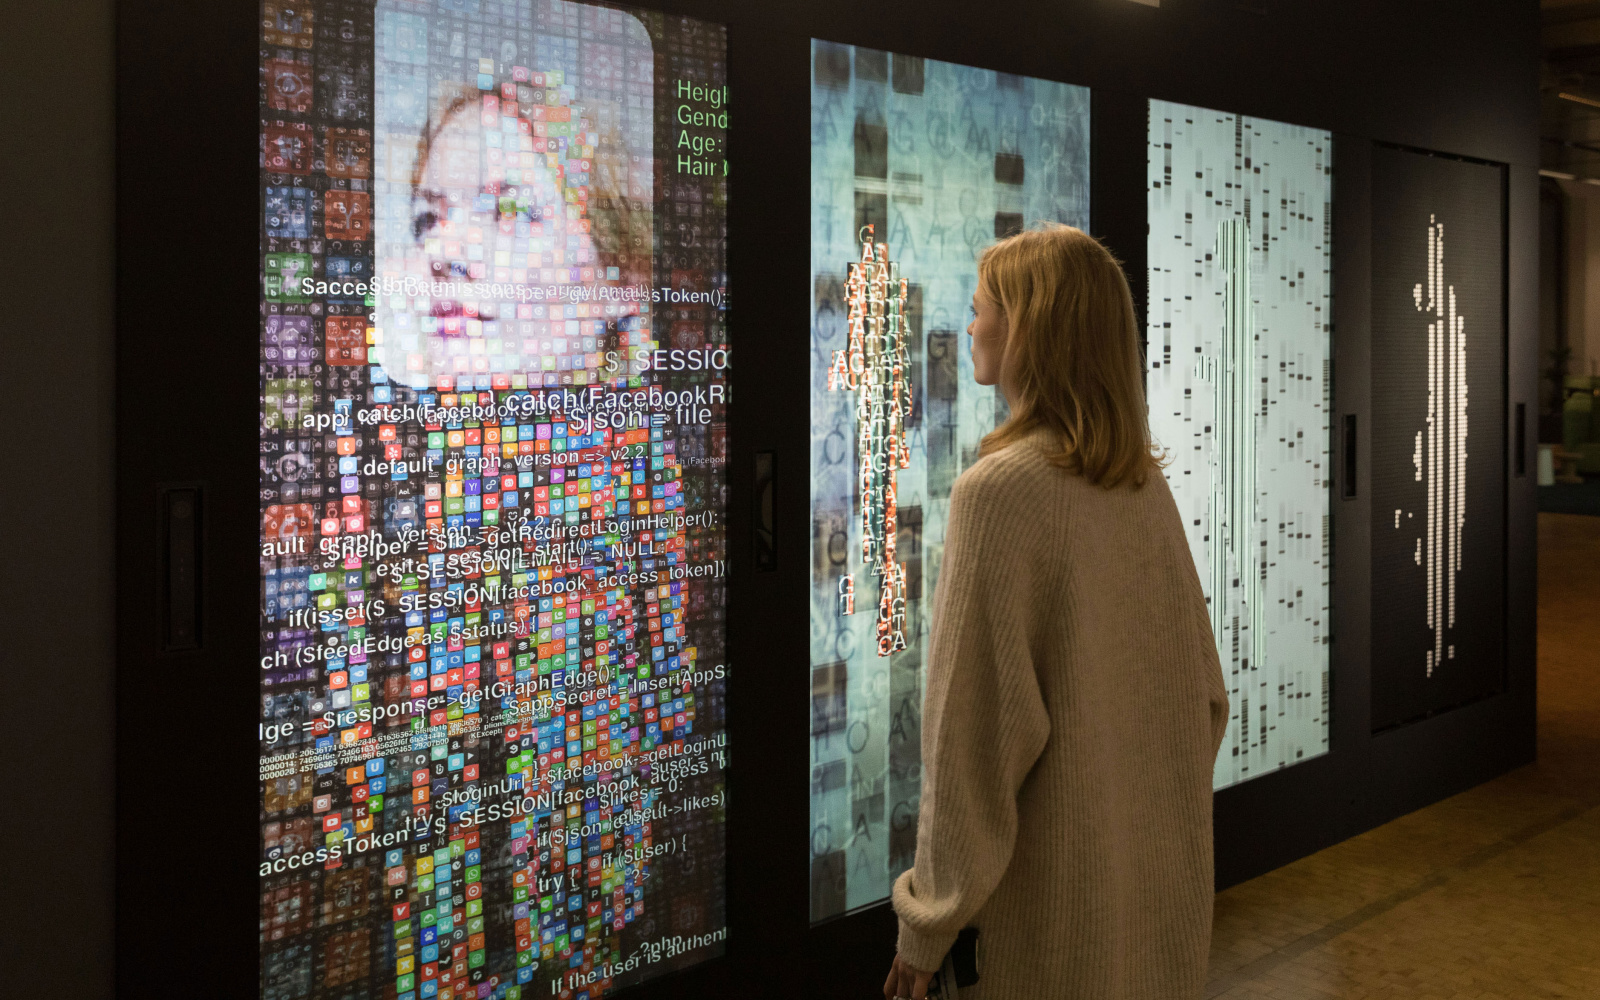 Eine Frau steht vor einer Wand mit mehreren Bildschirmen und digitalen Darstellungen